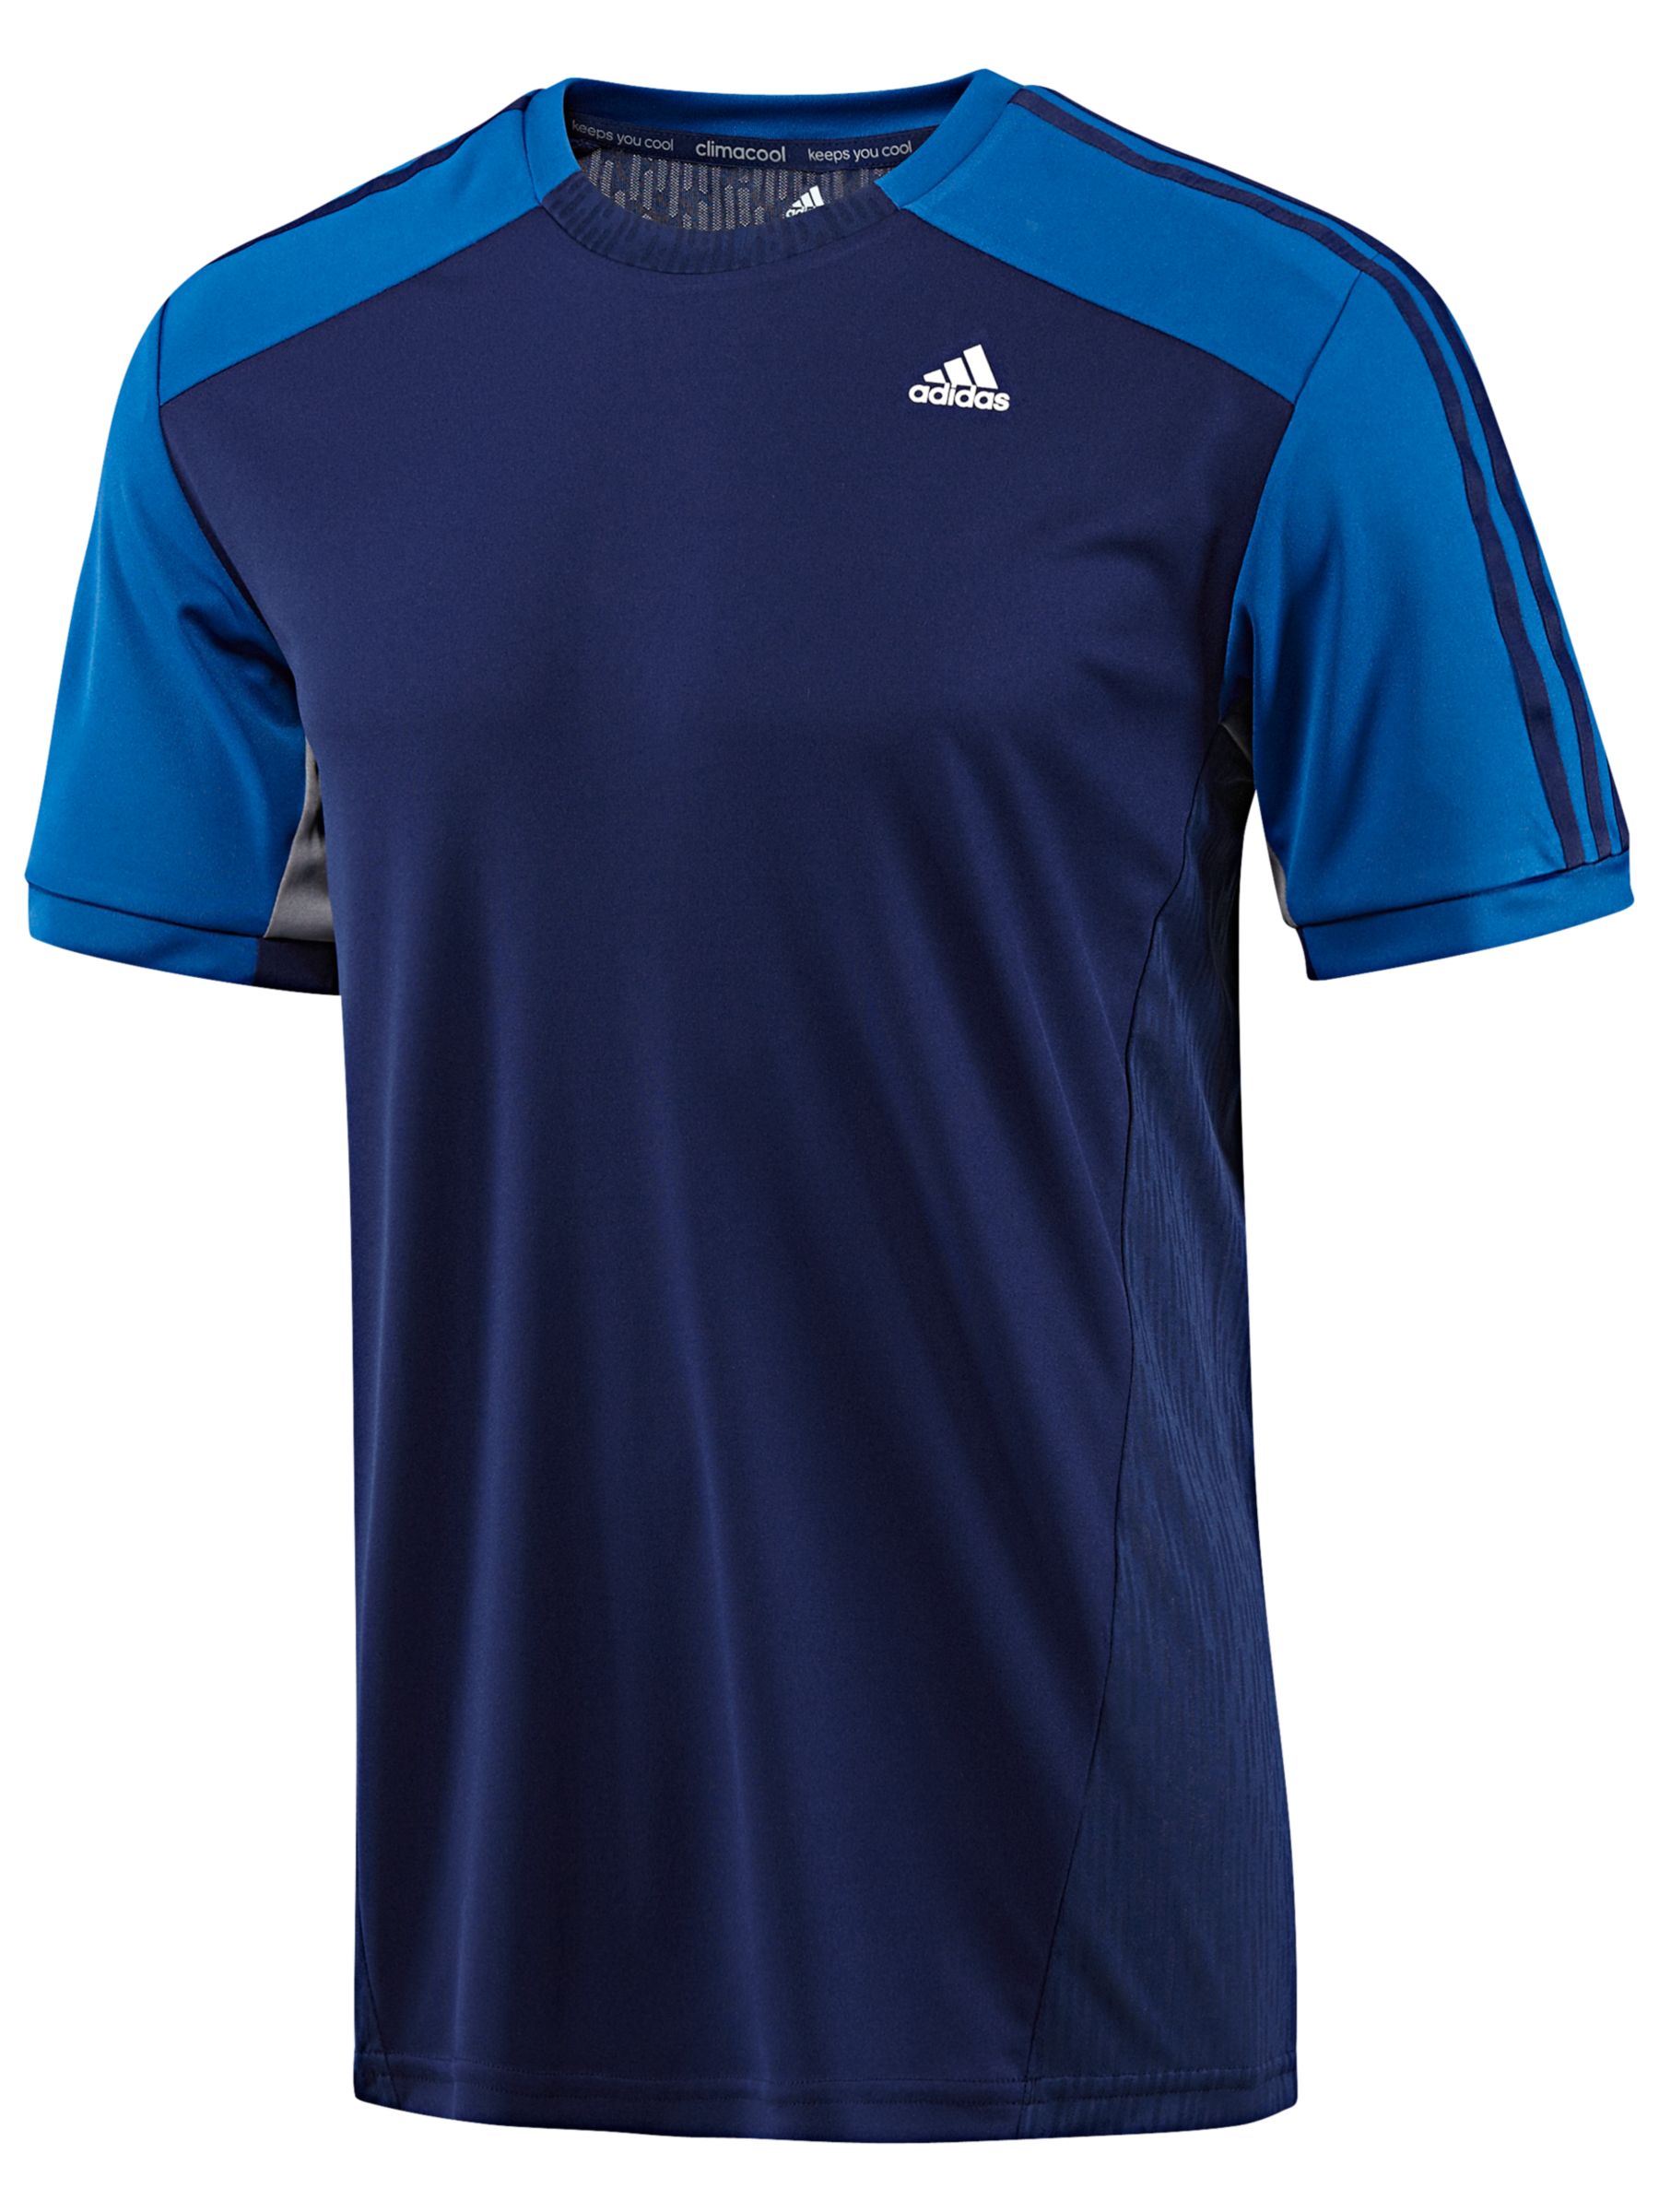 Adidas Clima 365 T-Shirt at John Lewis \u0026 Partners